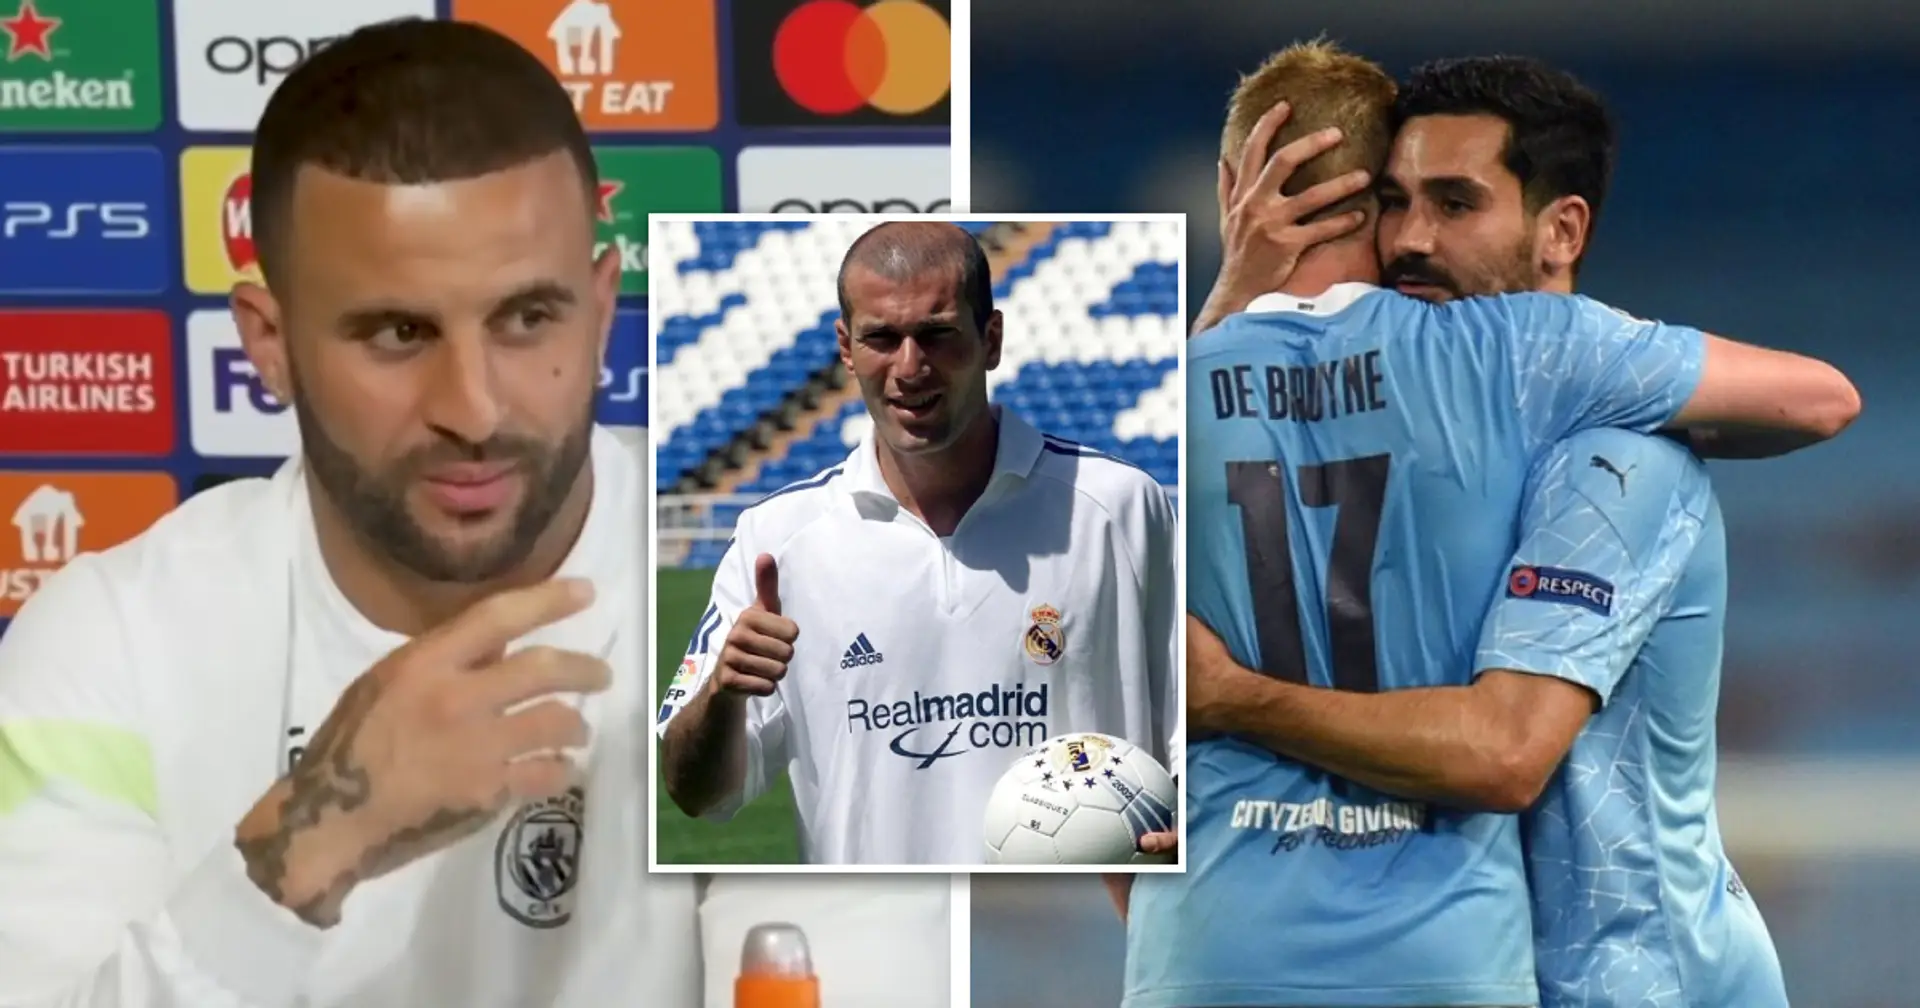 'Se convierte en Zidane estrella en los últimos meses': Kyle Walker sobre uno de sus compañeros